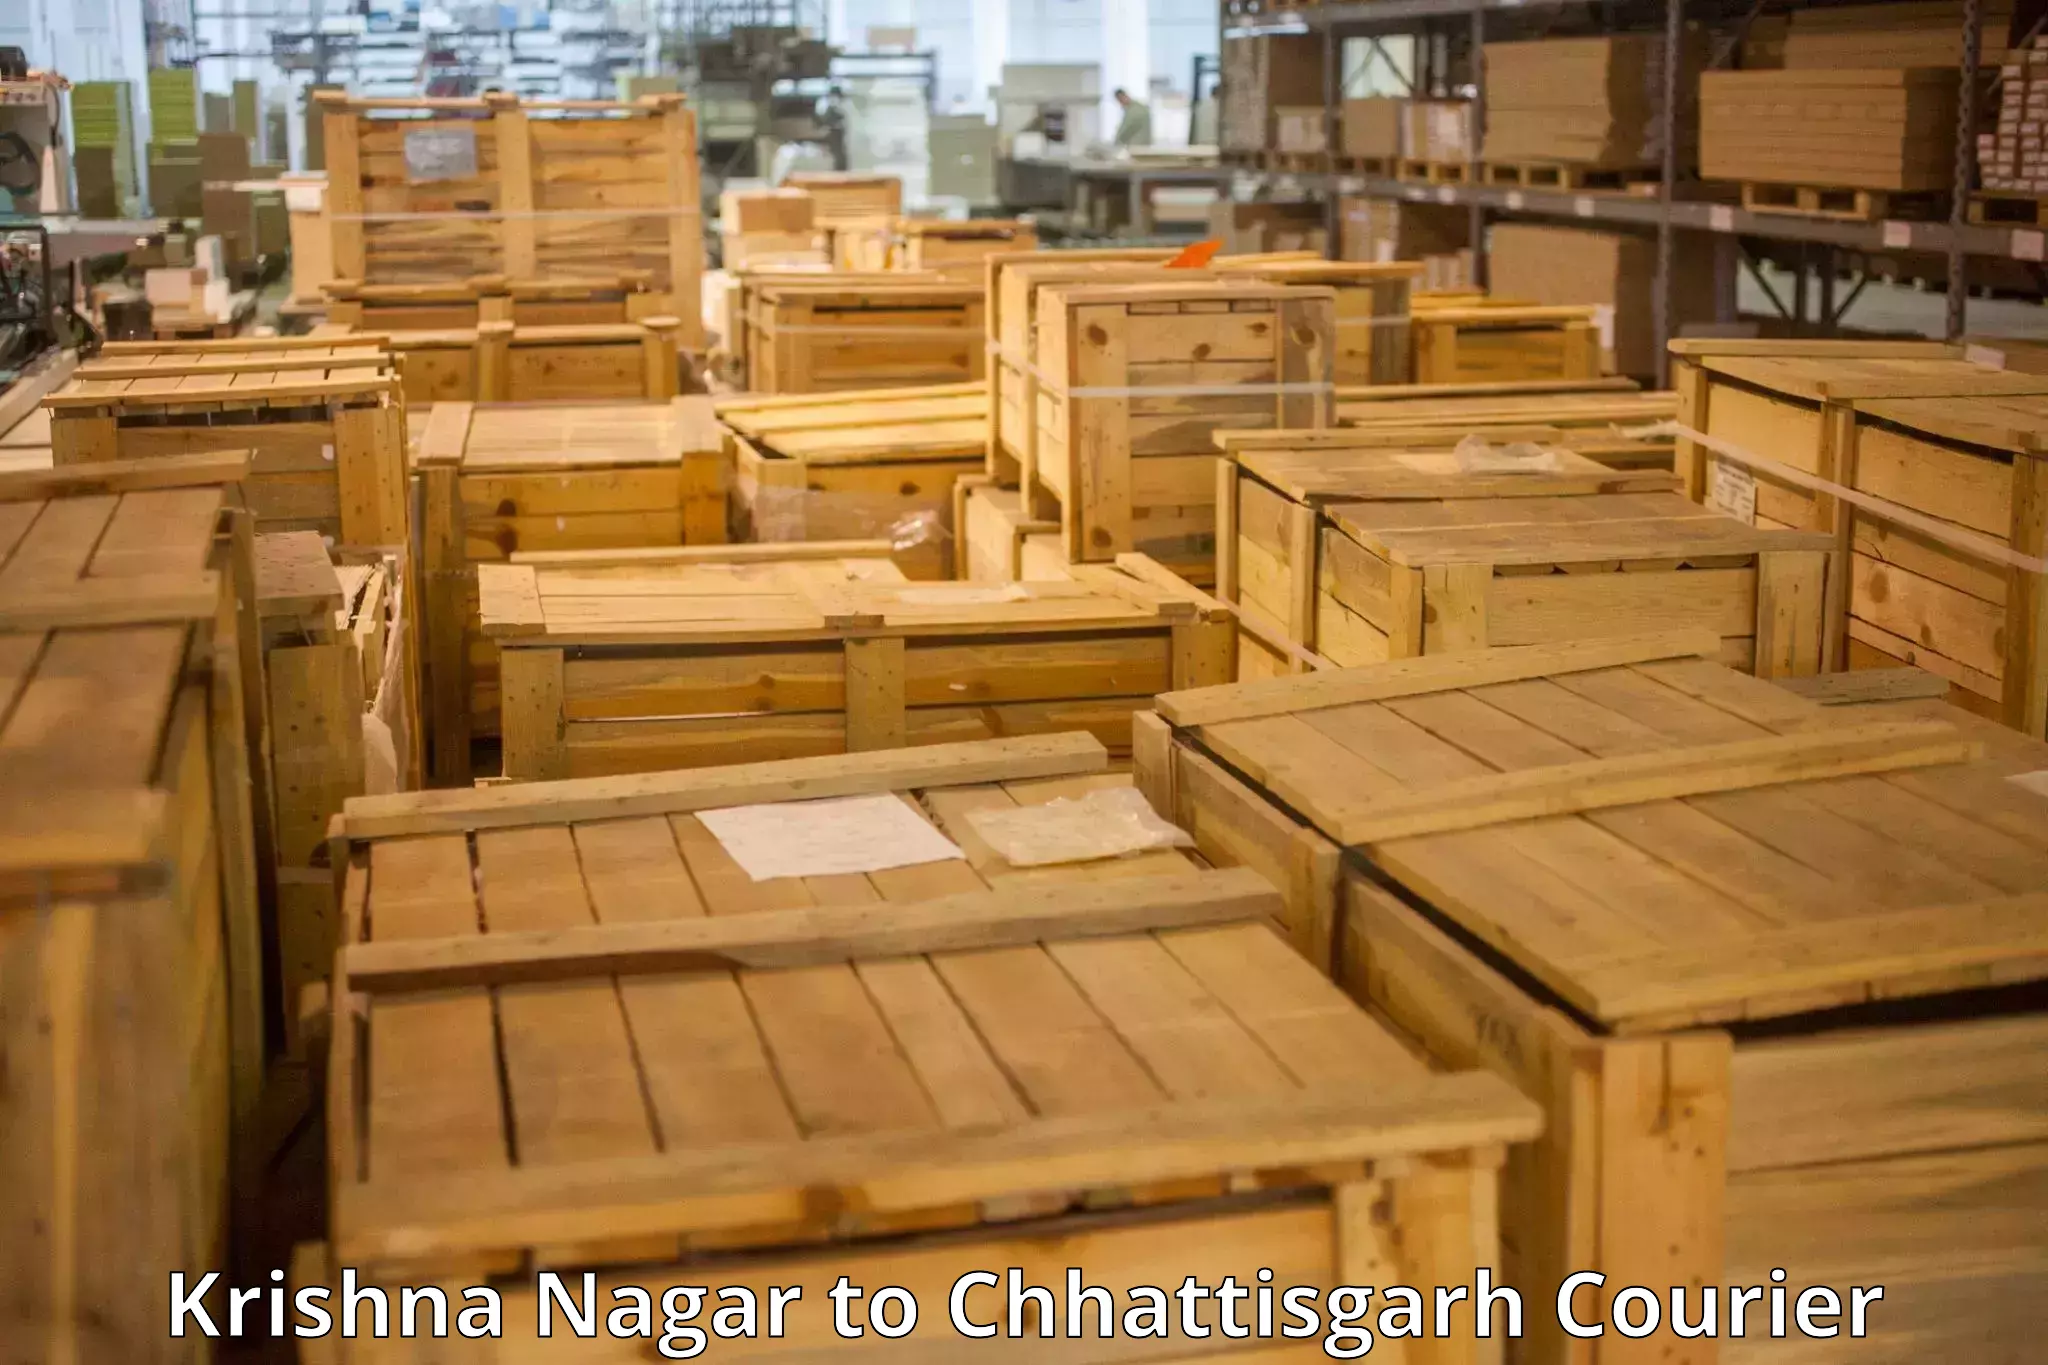 Baggage delivery planning Krishna Nagar to Mahasamund